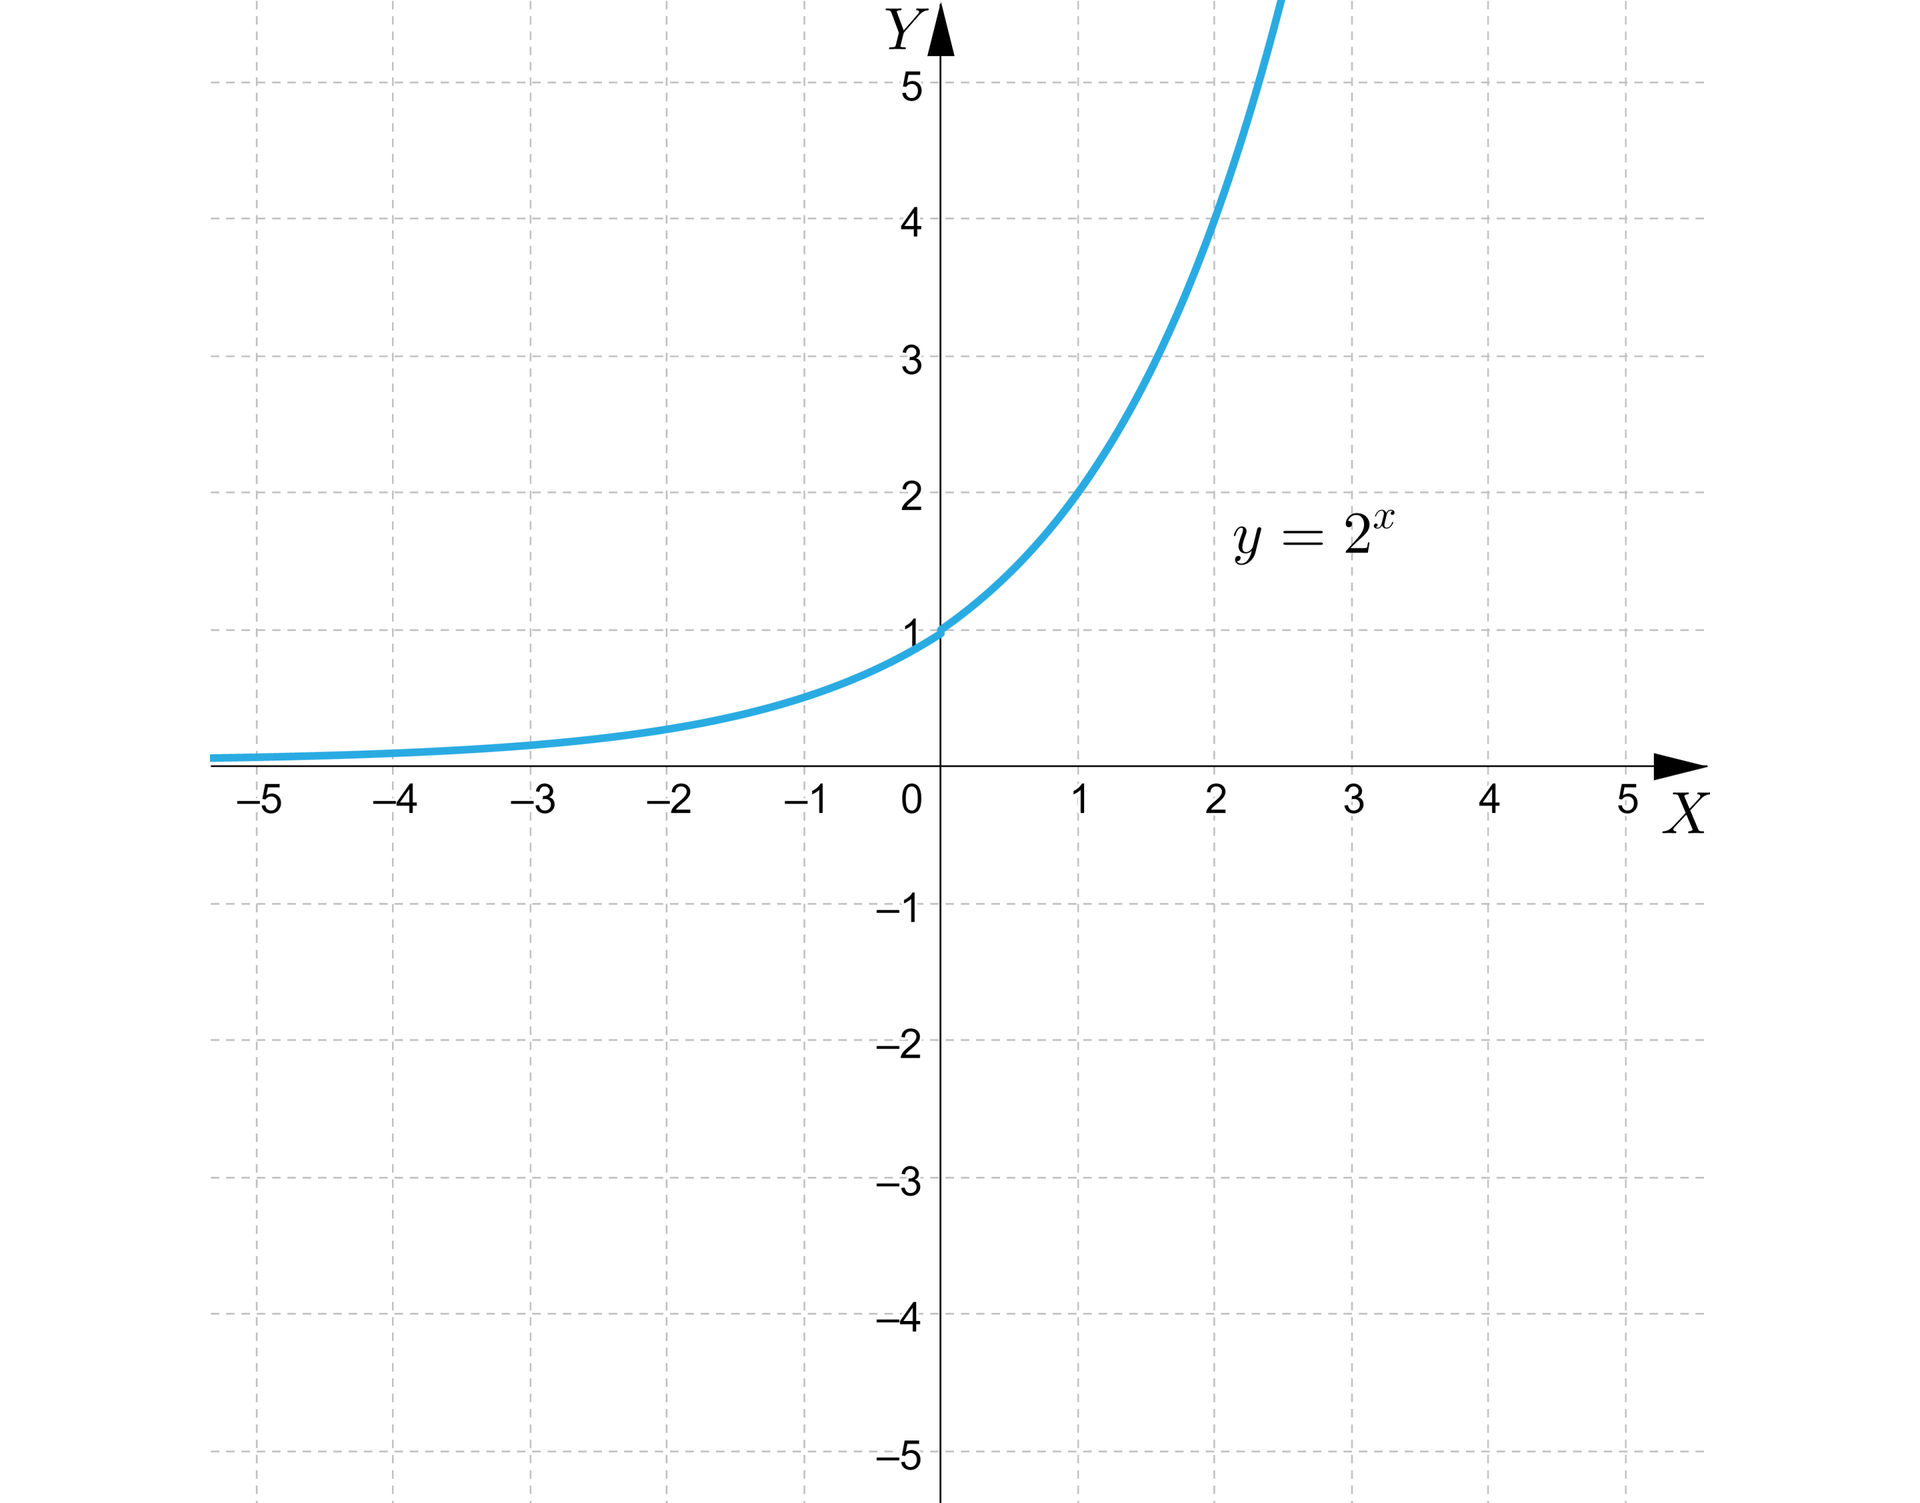 Ilustracja przedstawia układ współrzędnych z poziomą osią X od minus pięciu do pięciu oraz z pionową osią Y od minus pięciu do pięciu. Na płaszczyźnie narysowano wykres funkcji wykładniczej wypłaszczający się do ujemnej półosi O X w minus nieskończoności, przebiegającej przez punkt  0;1 i biegnący dalej w pierwszej ćwiartce łukiem pionowym w górę.